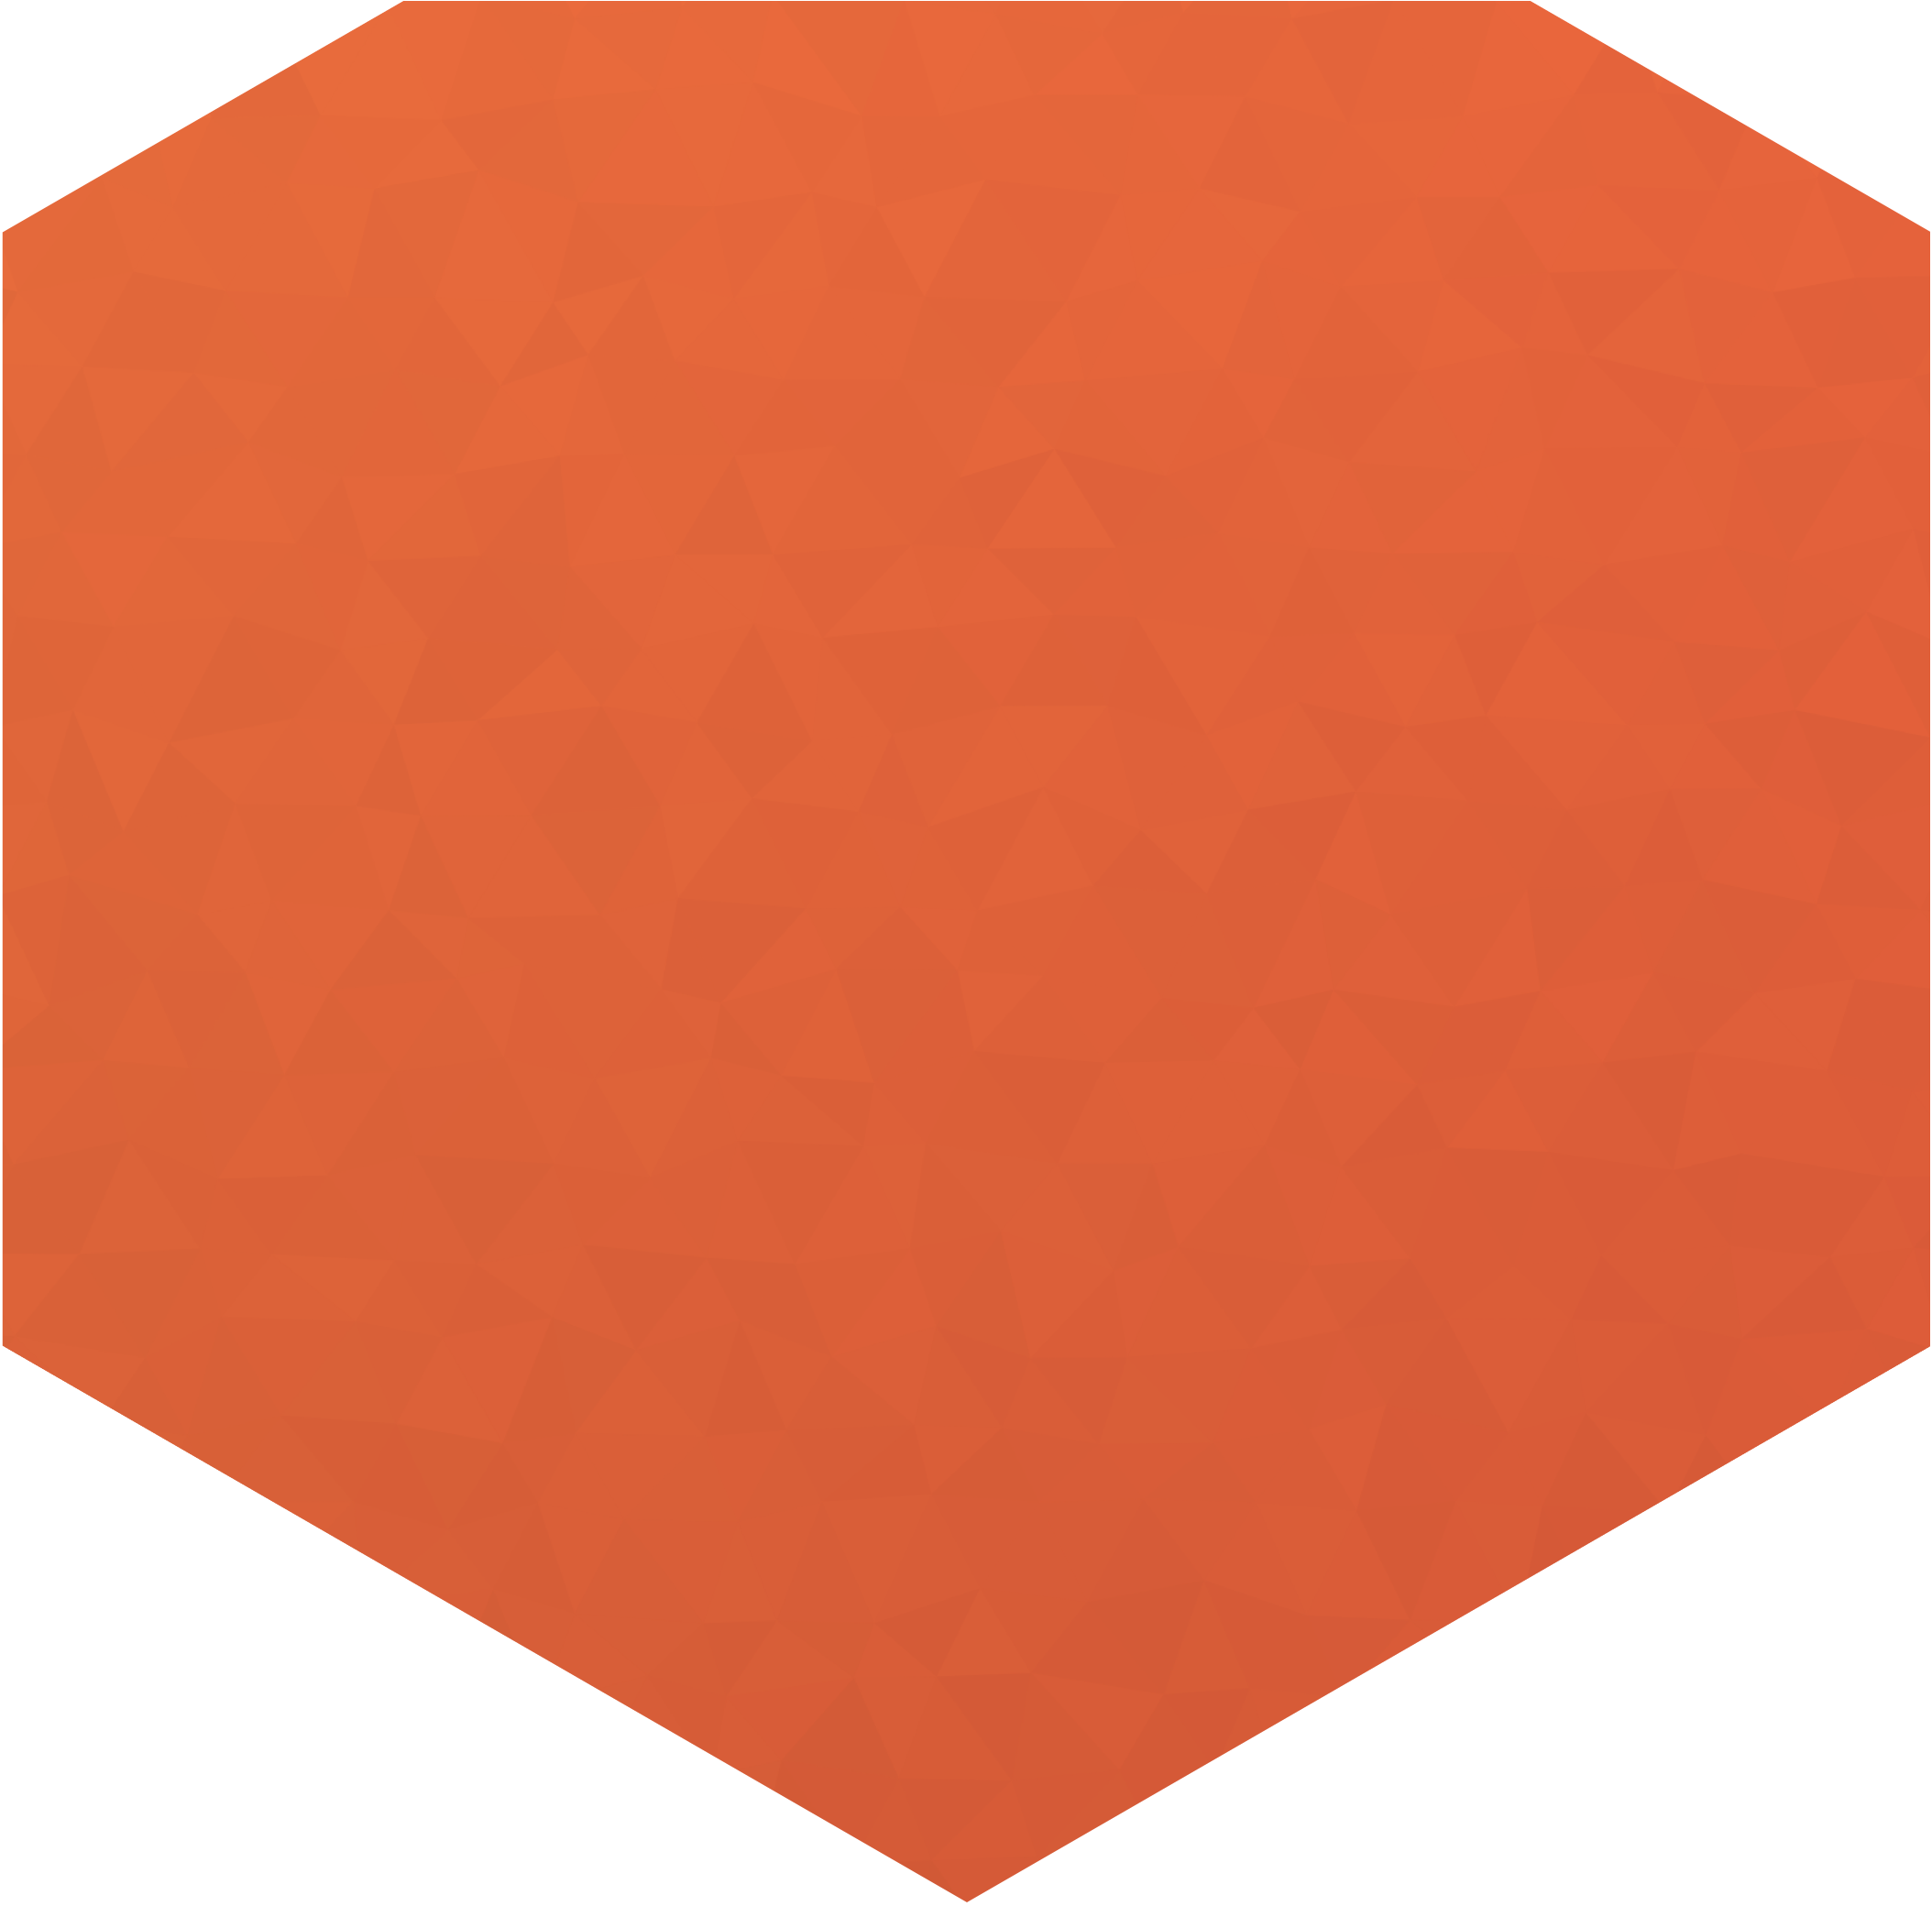 Orange hexigon background image